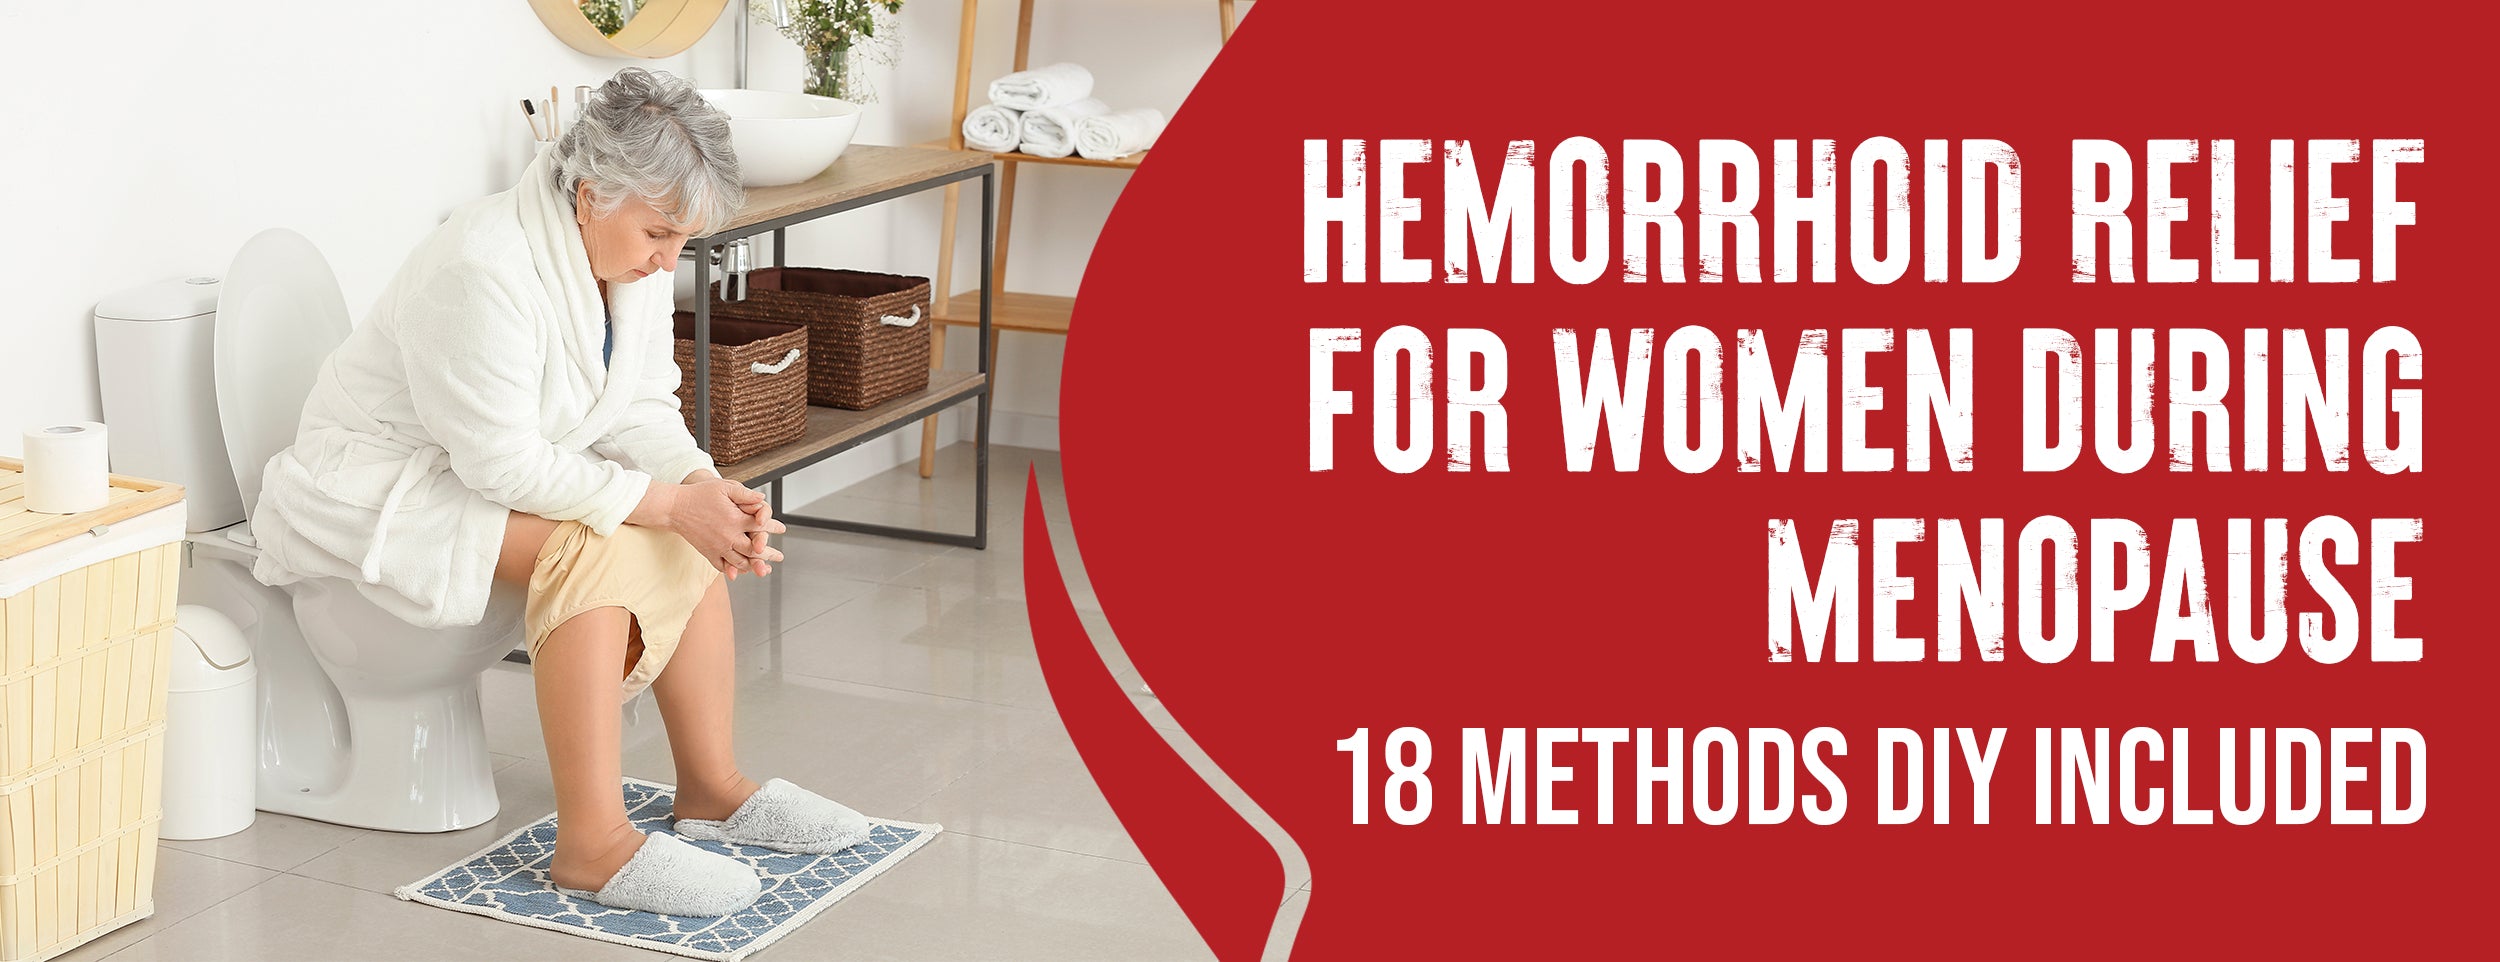 6 Best Relief Procedures for Menopausal Hemorrhoids